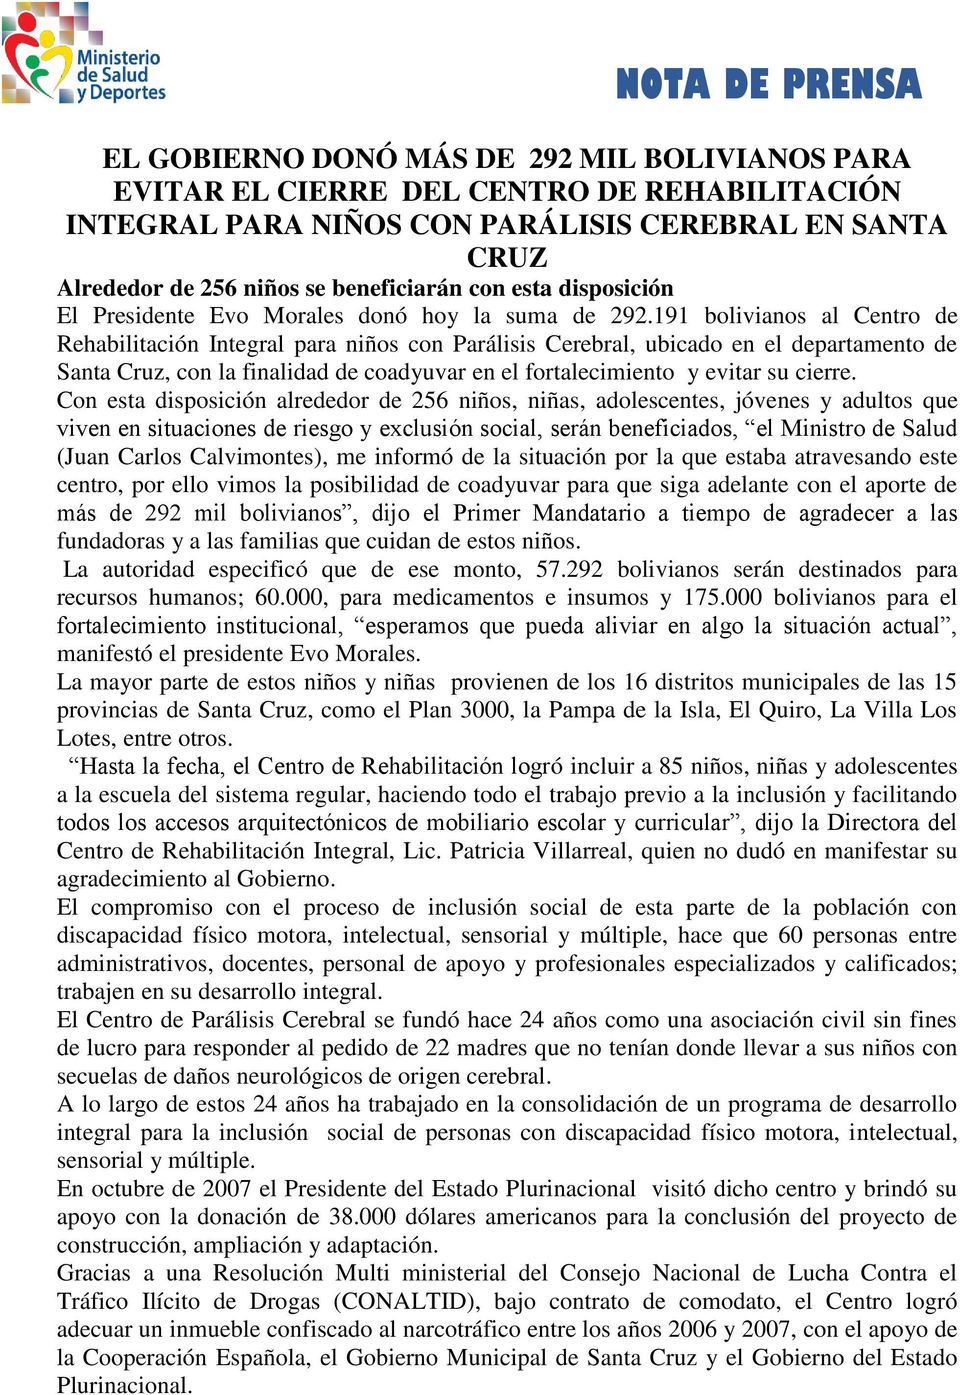 191 bolivianos al Centro de Rehabilitación Integral para niños con Parálisis Cerebral, ubicado en el departamento de Santa Cruz, con la finalidad de coadyuvar en el fortalecimiento y evitar su cierre.